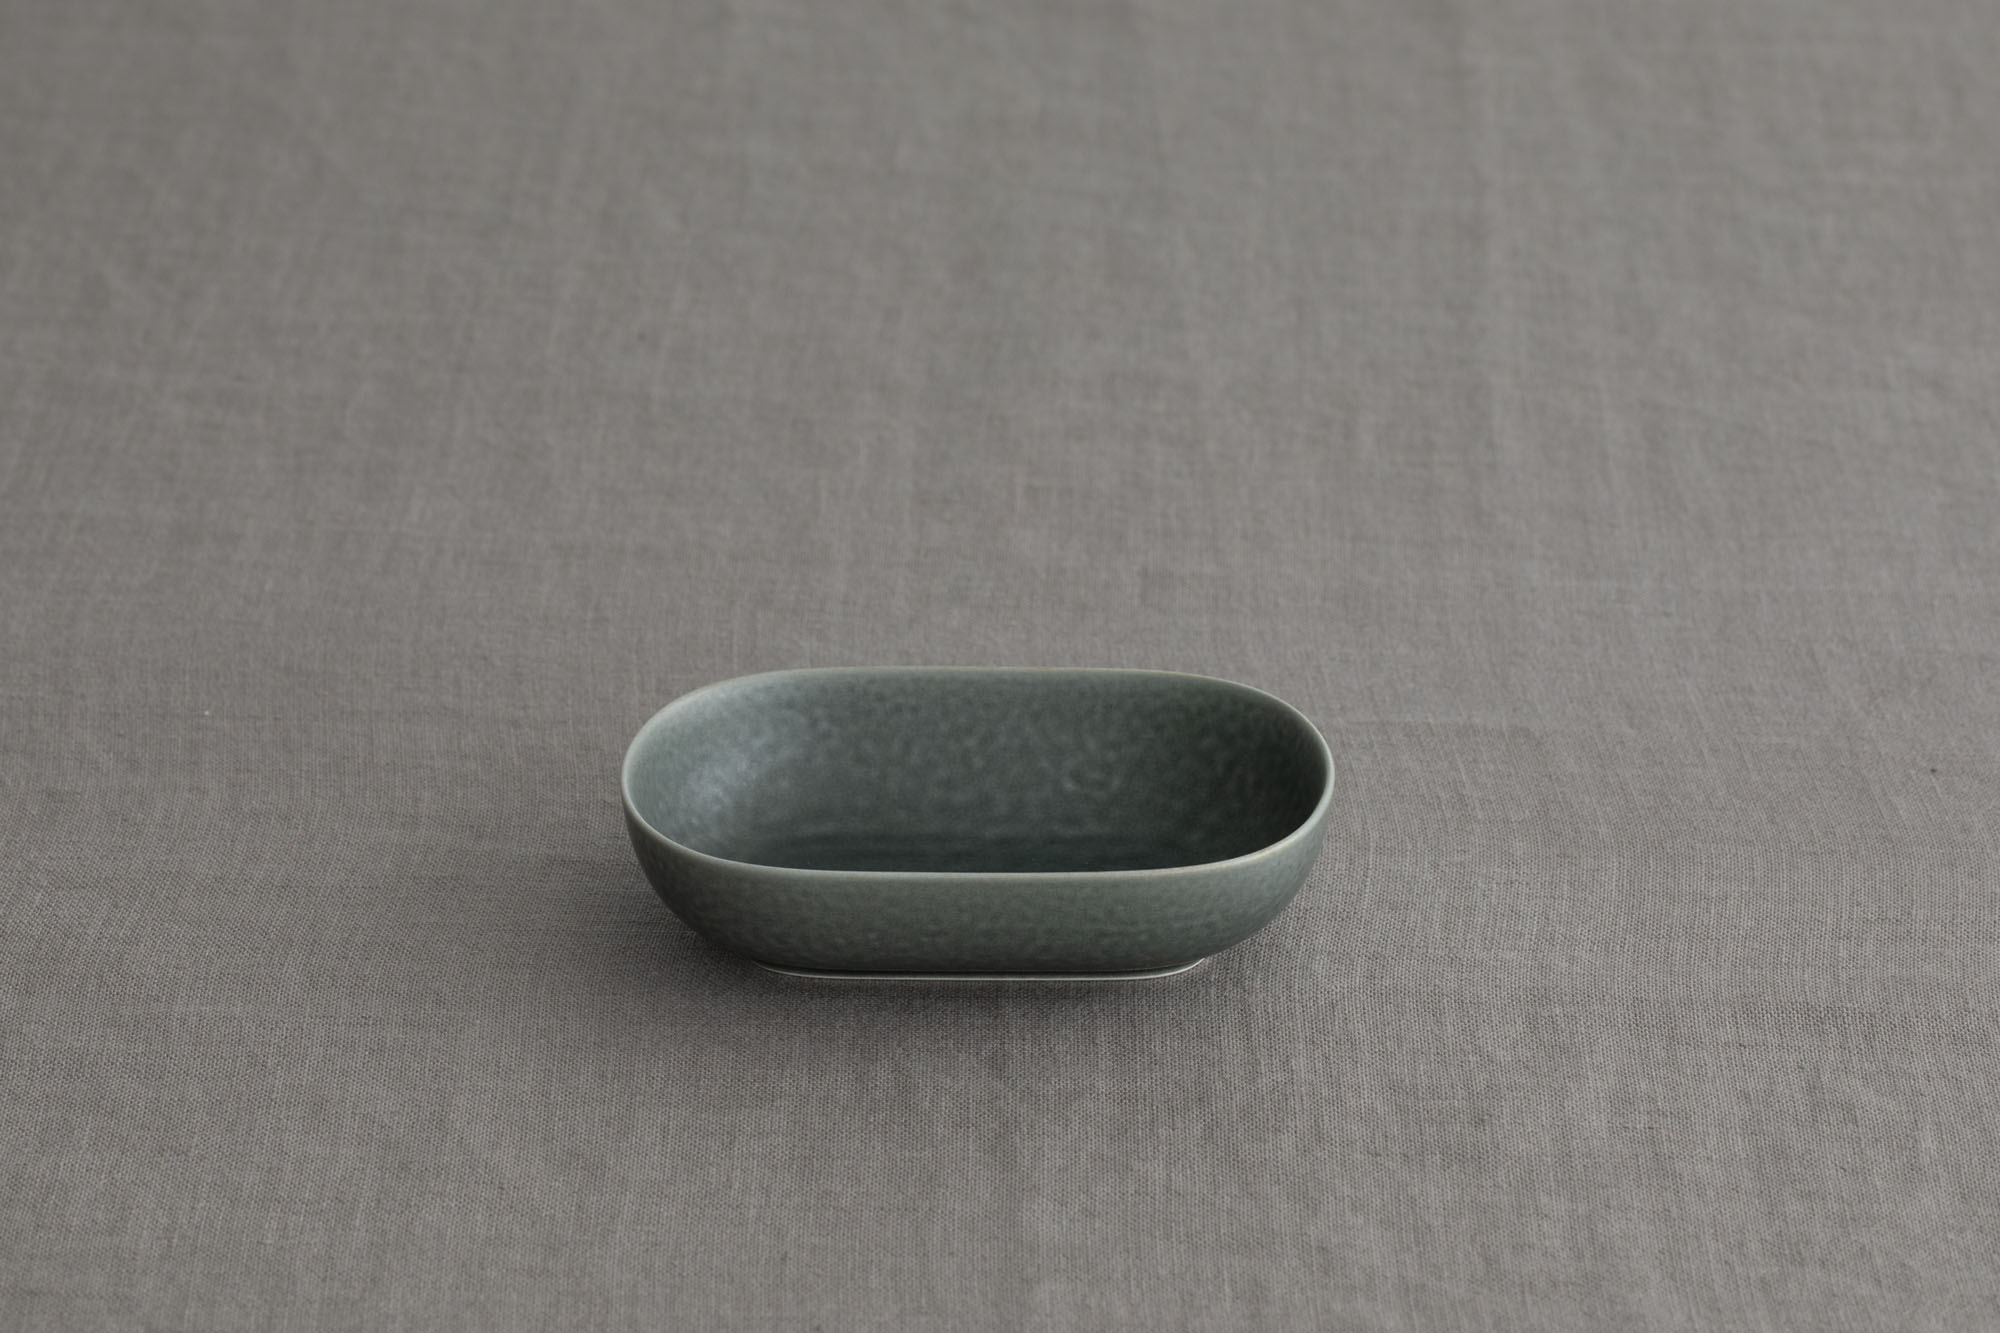 ReIRABO　oval plate S - yumiko iihoshi porcelain 公式オンラインショップ